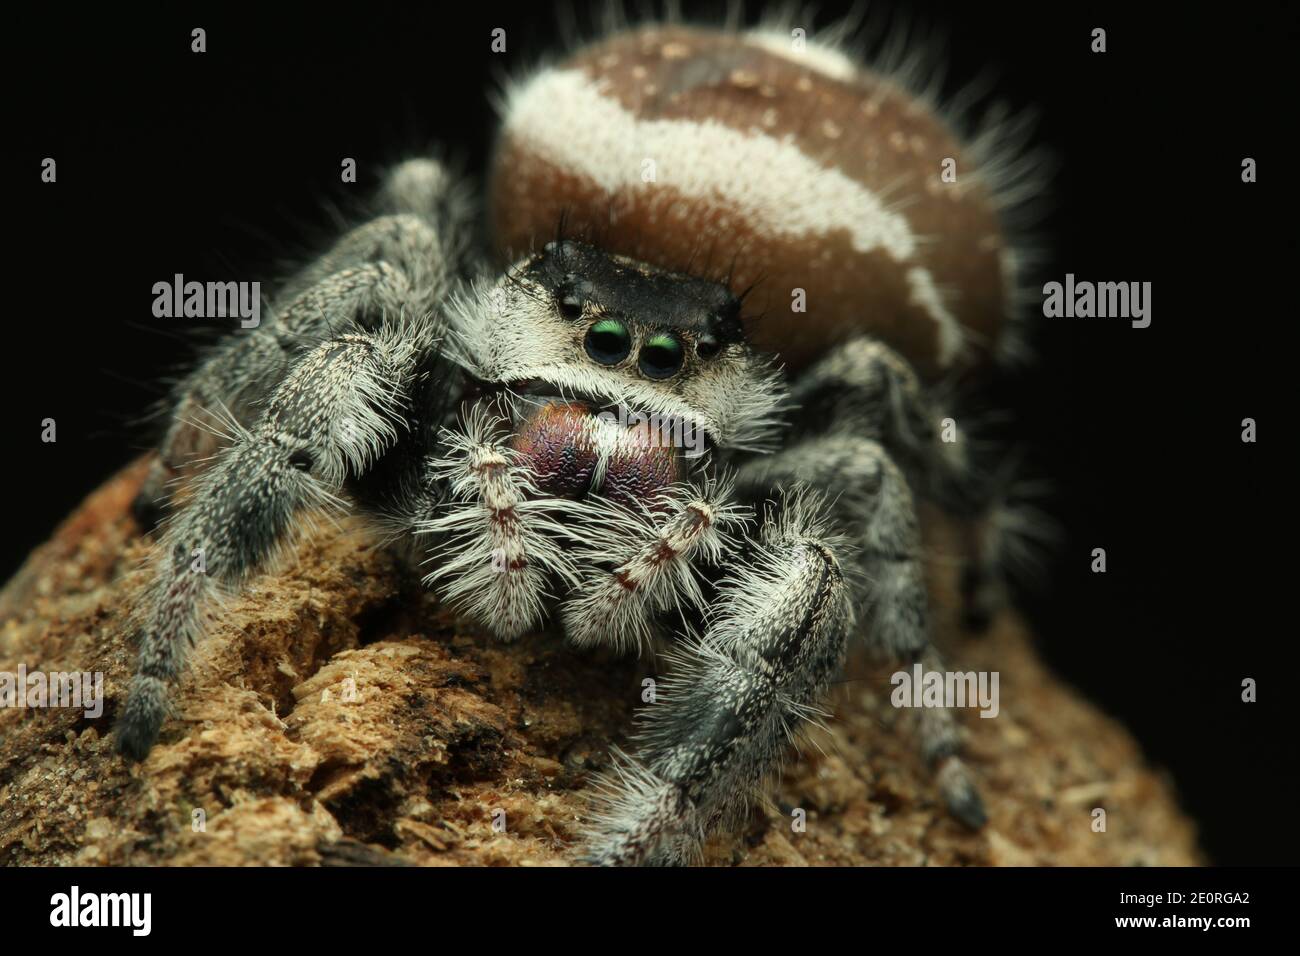 Cute jumping spider (phidippus regius) on black background. Stock Photo